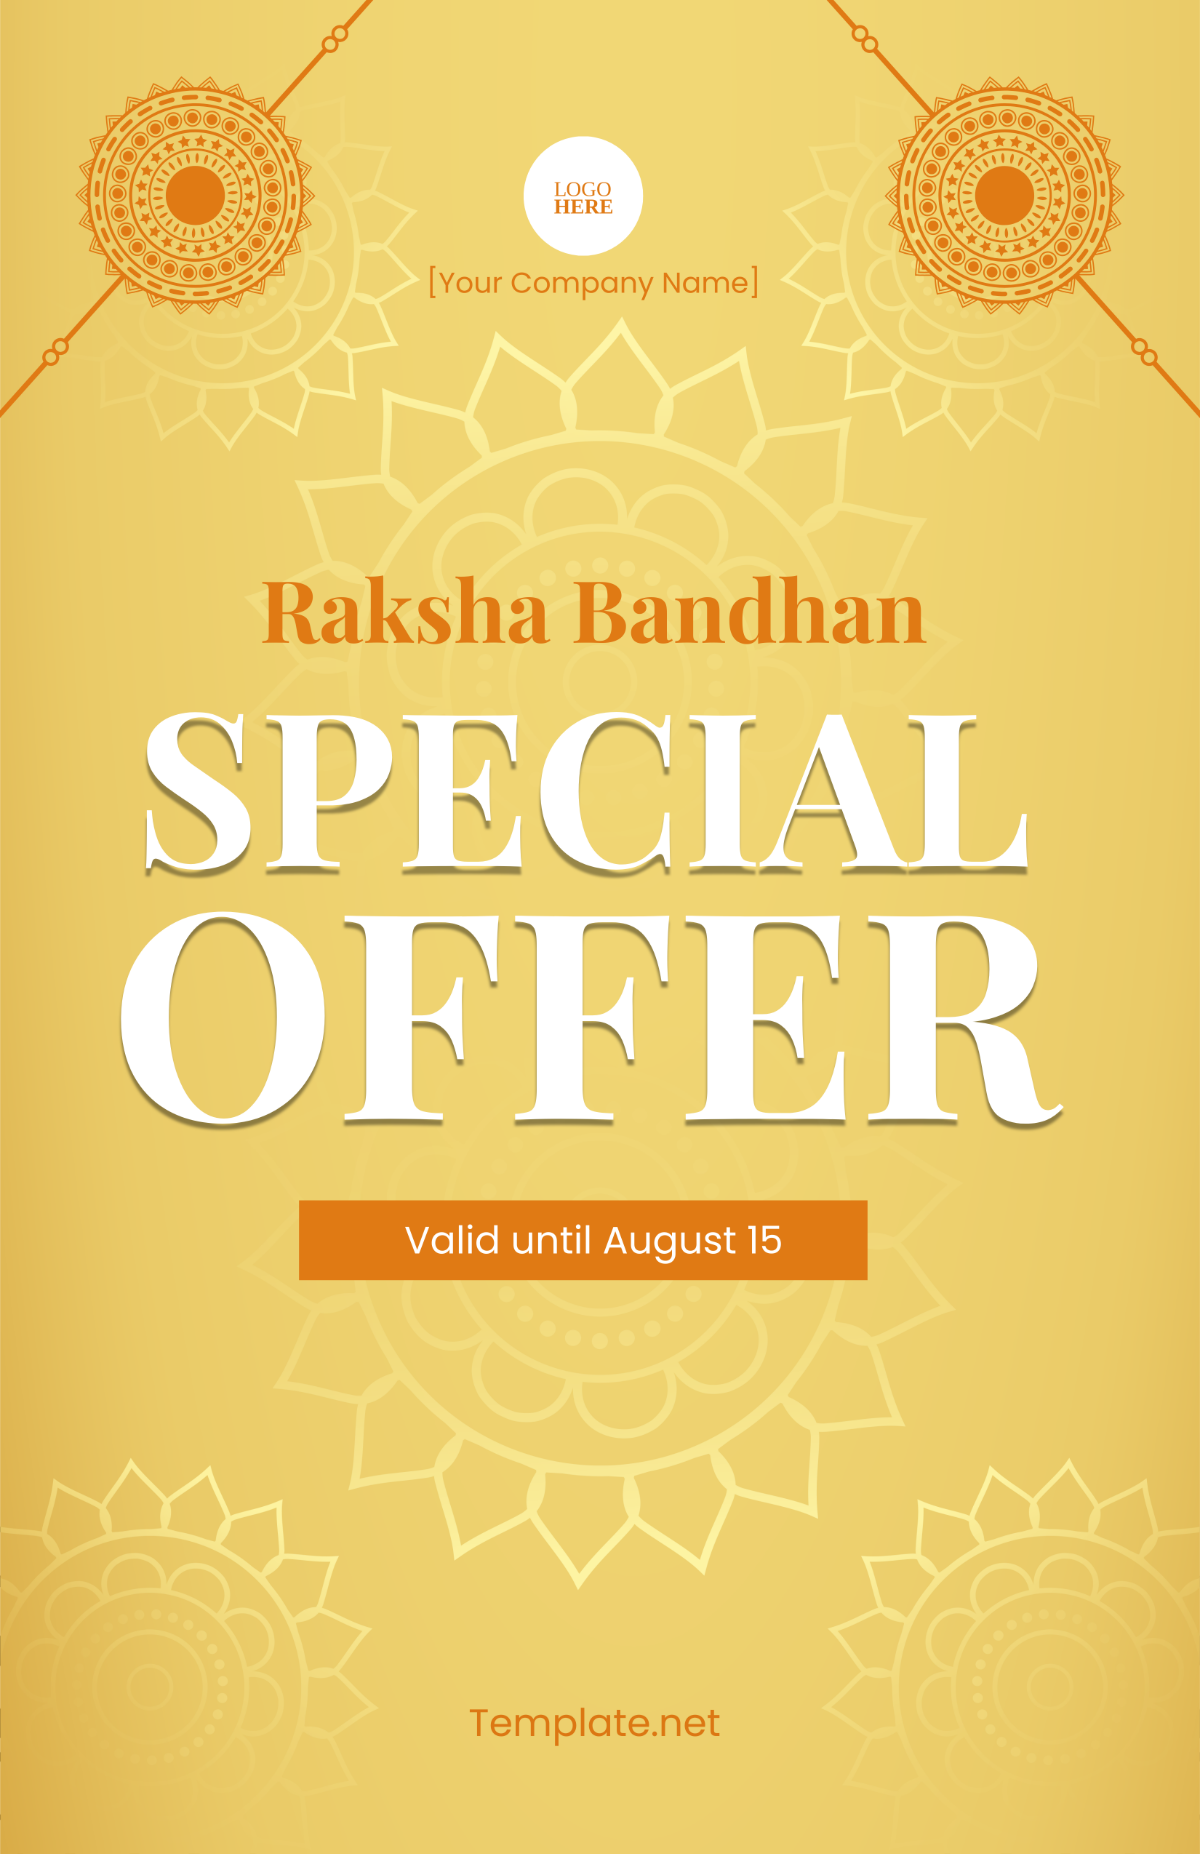 Raksha Bandhan Offer Poster